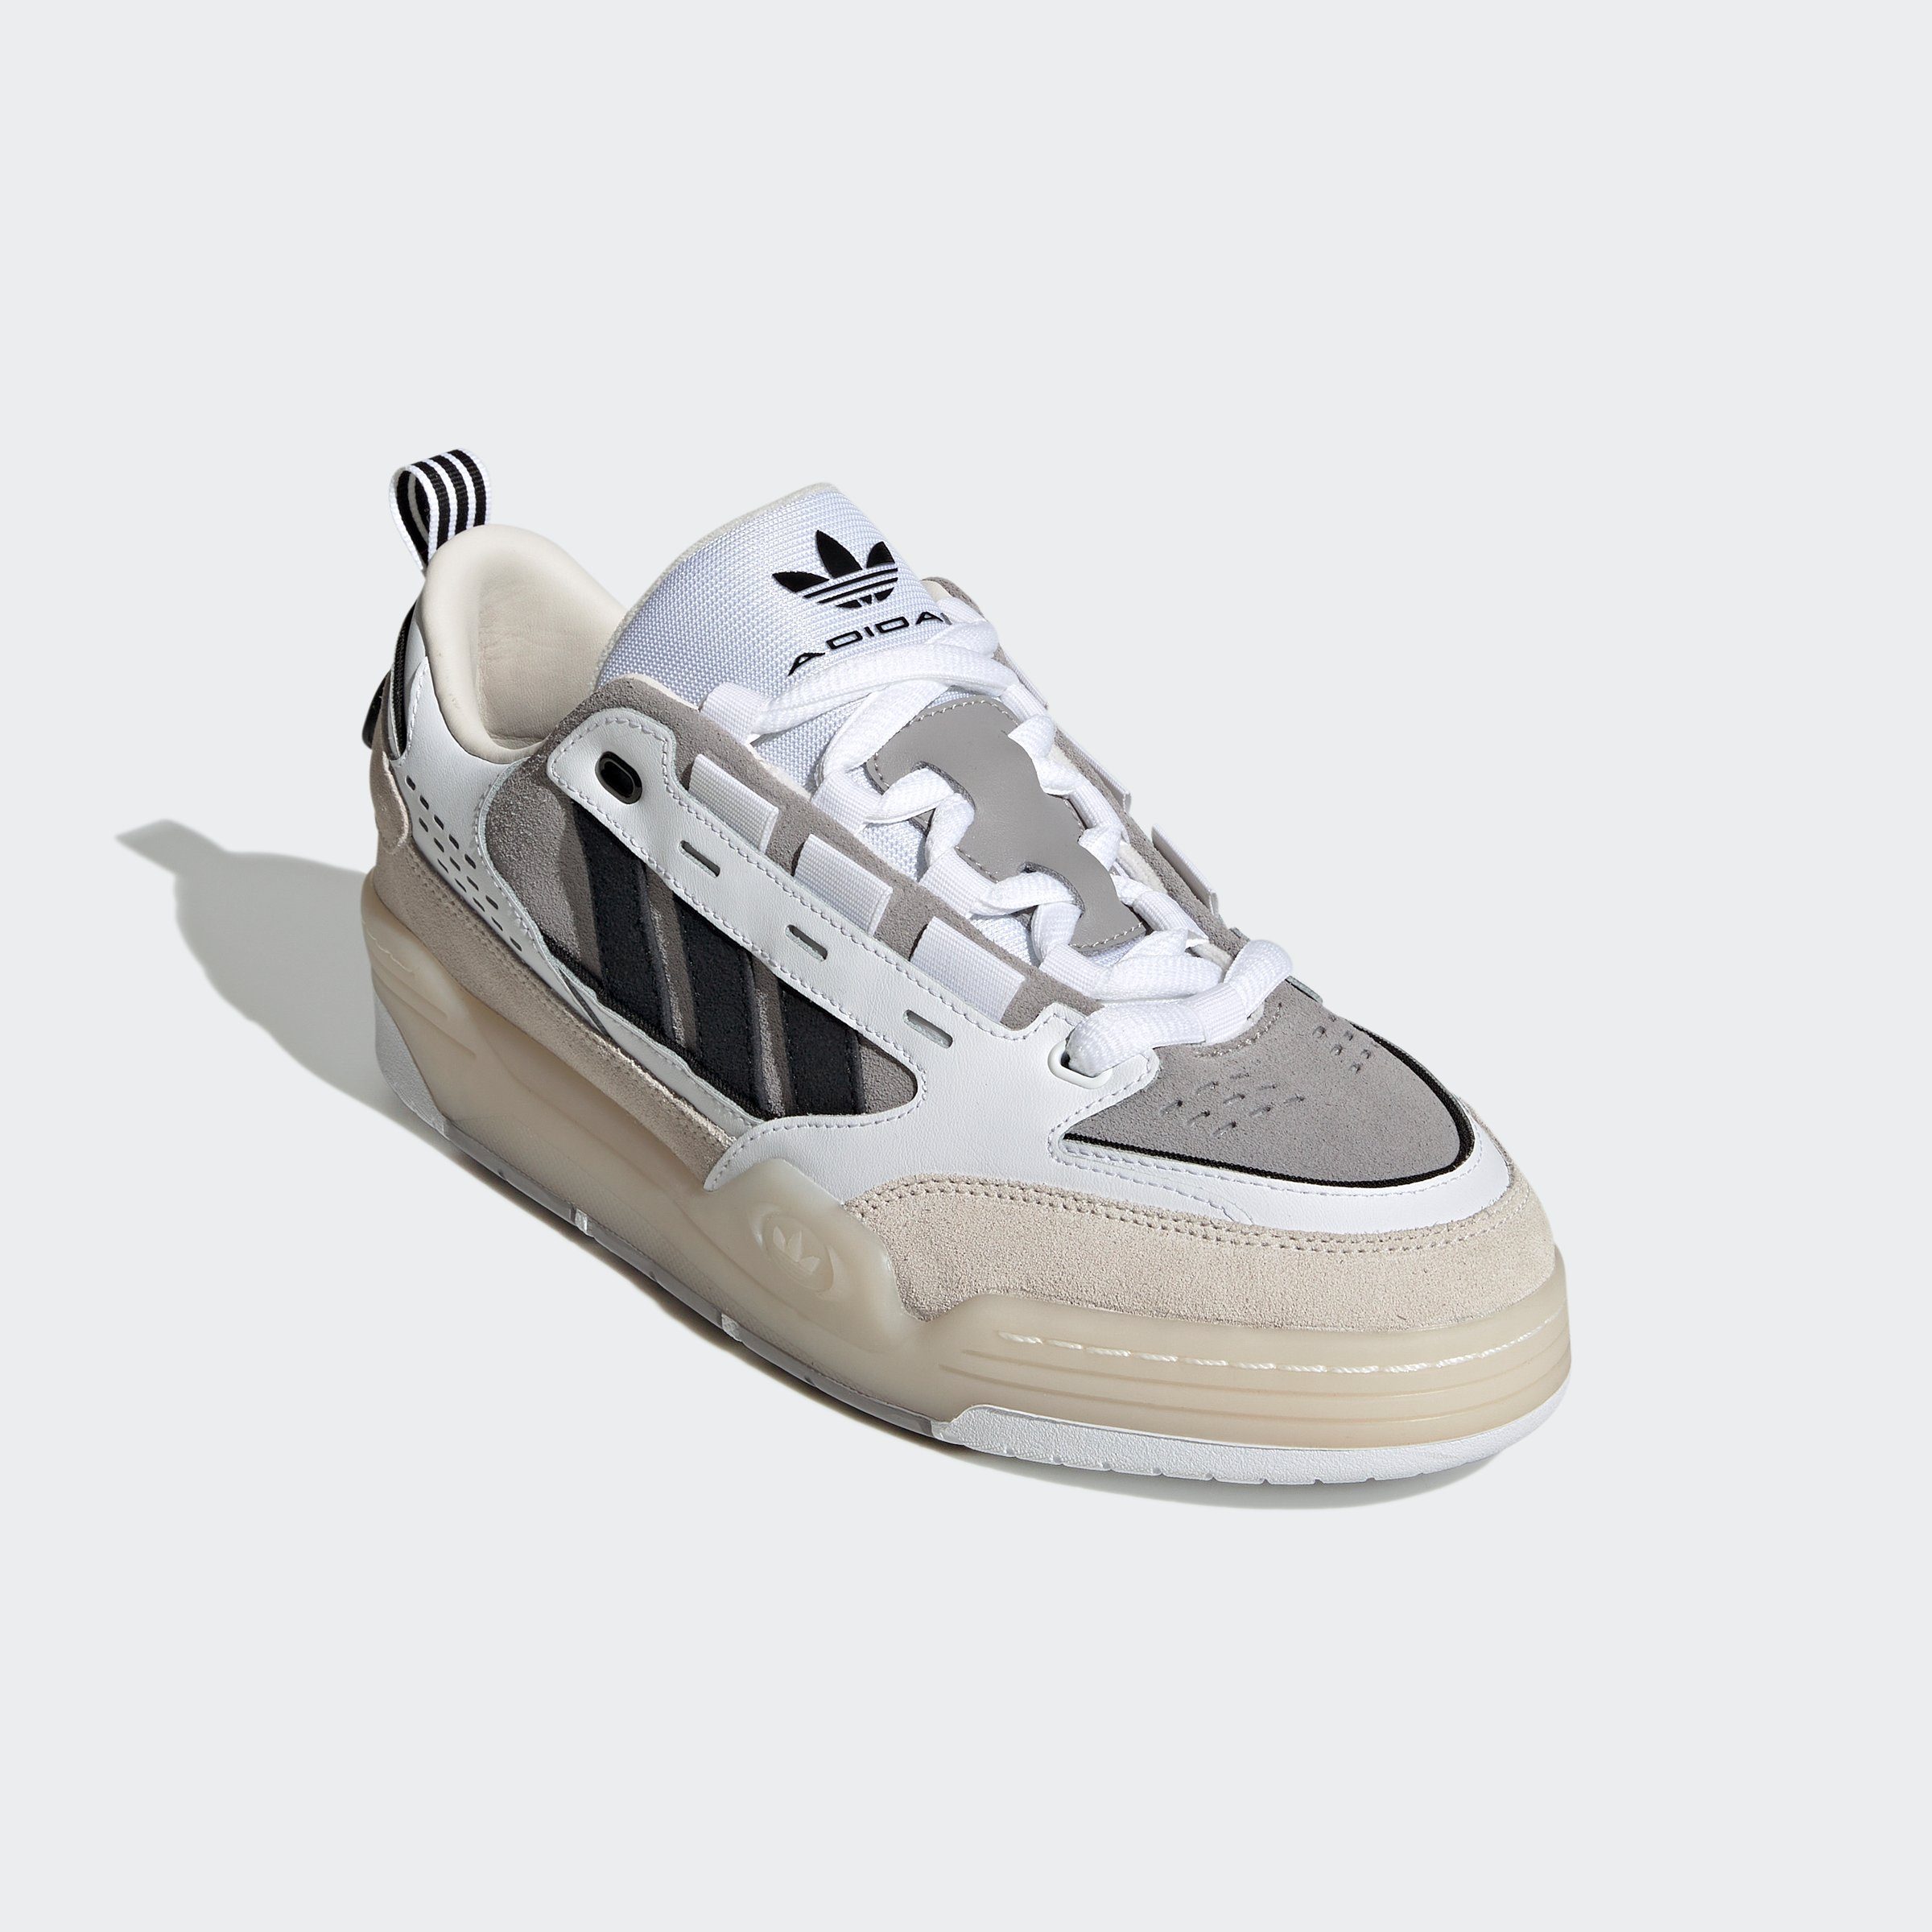 [Auf Bestellung gefertigte Produkte] Sneaker White / ADI2000 Originals Cloud Core Black / White Chalk adidas